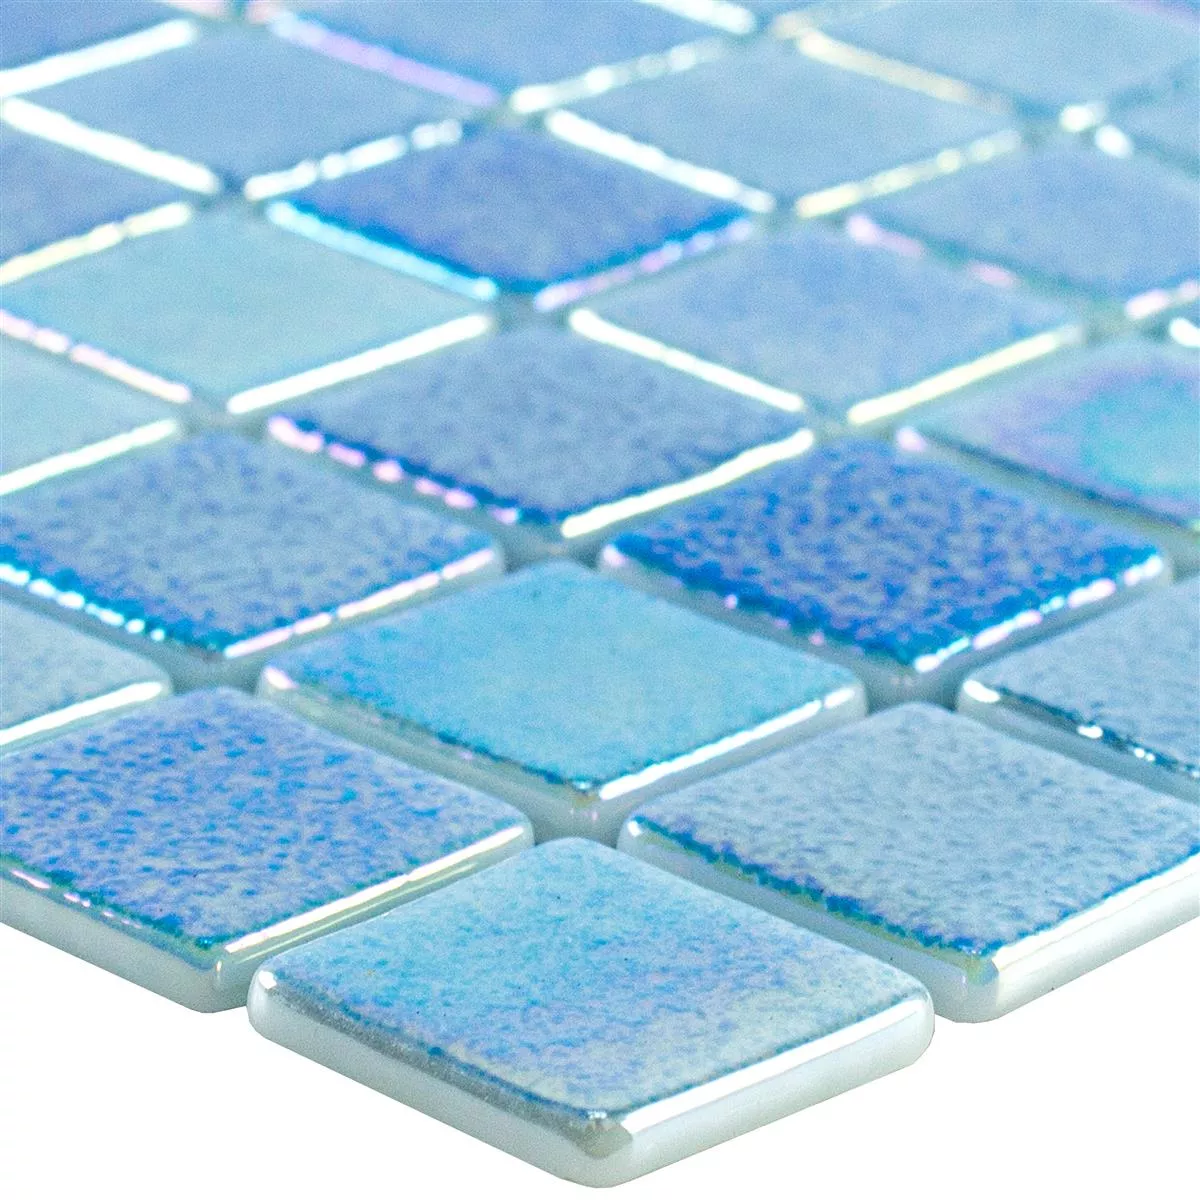 Cristal Piscina Mosaico McNeal Azul Claro 25